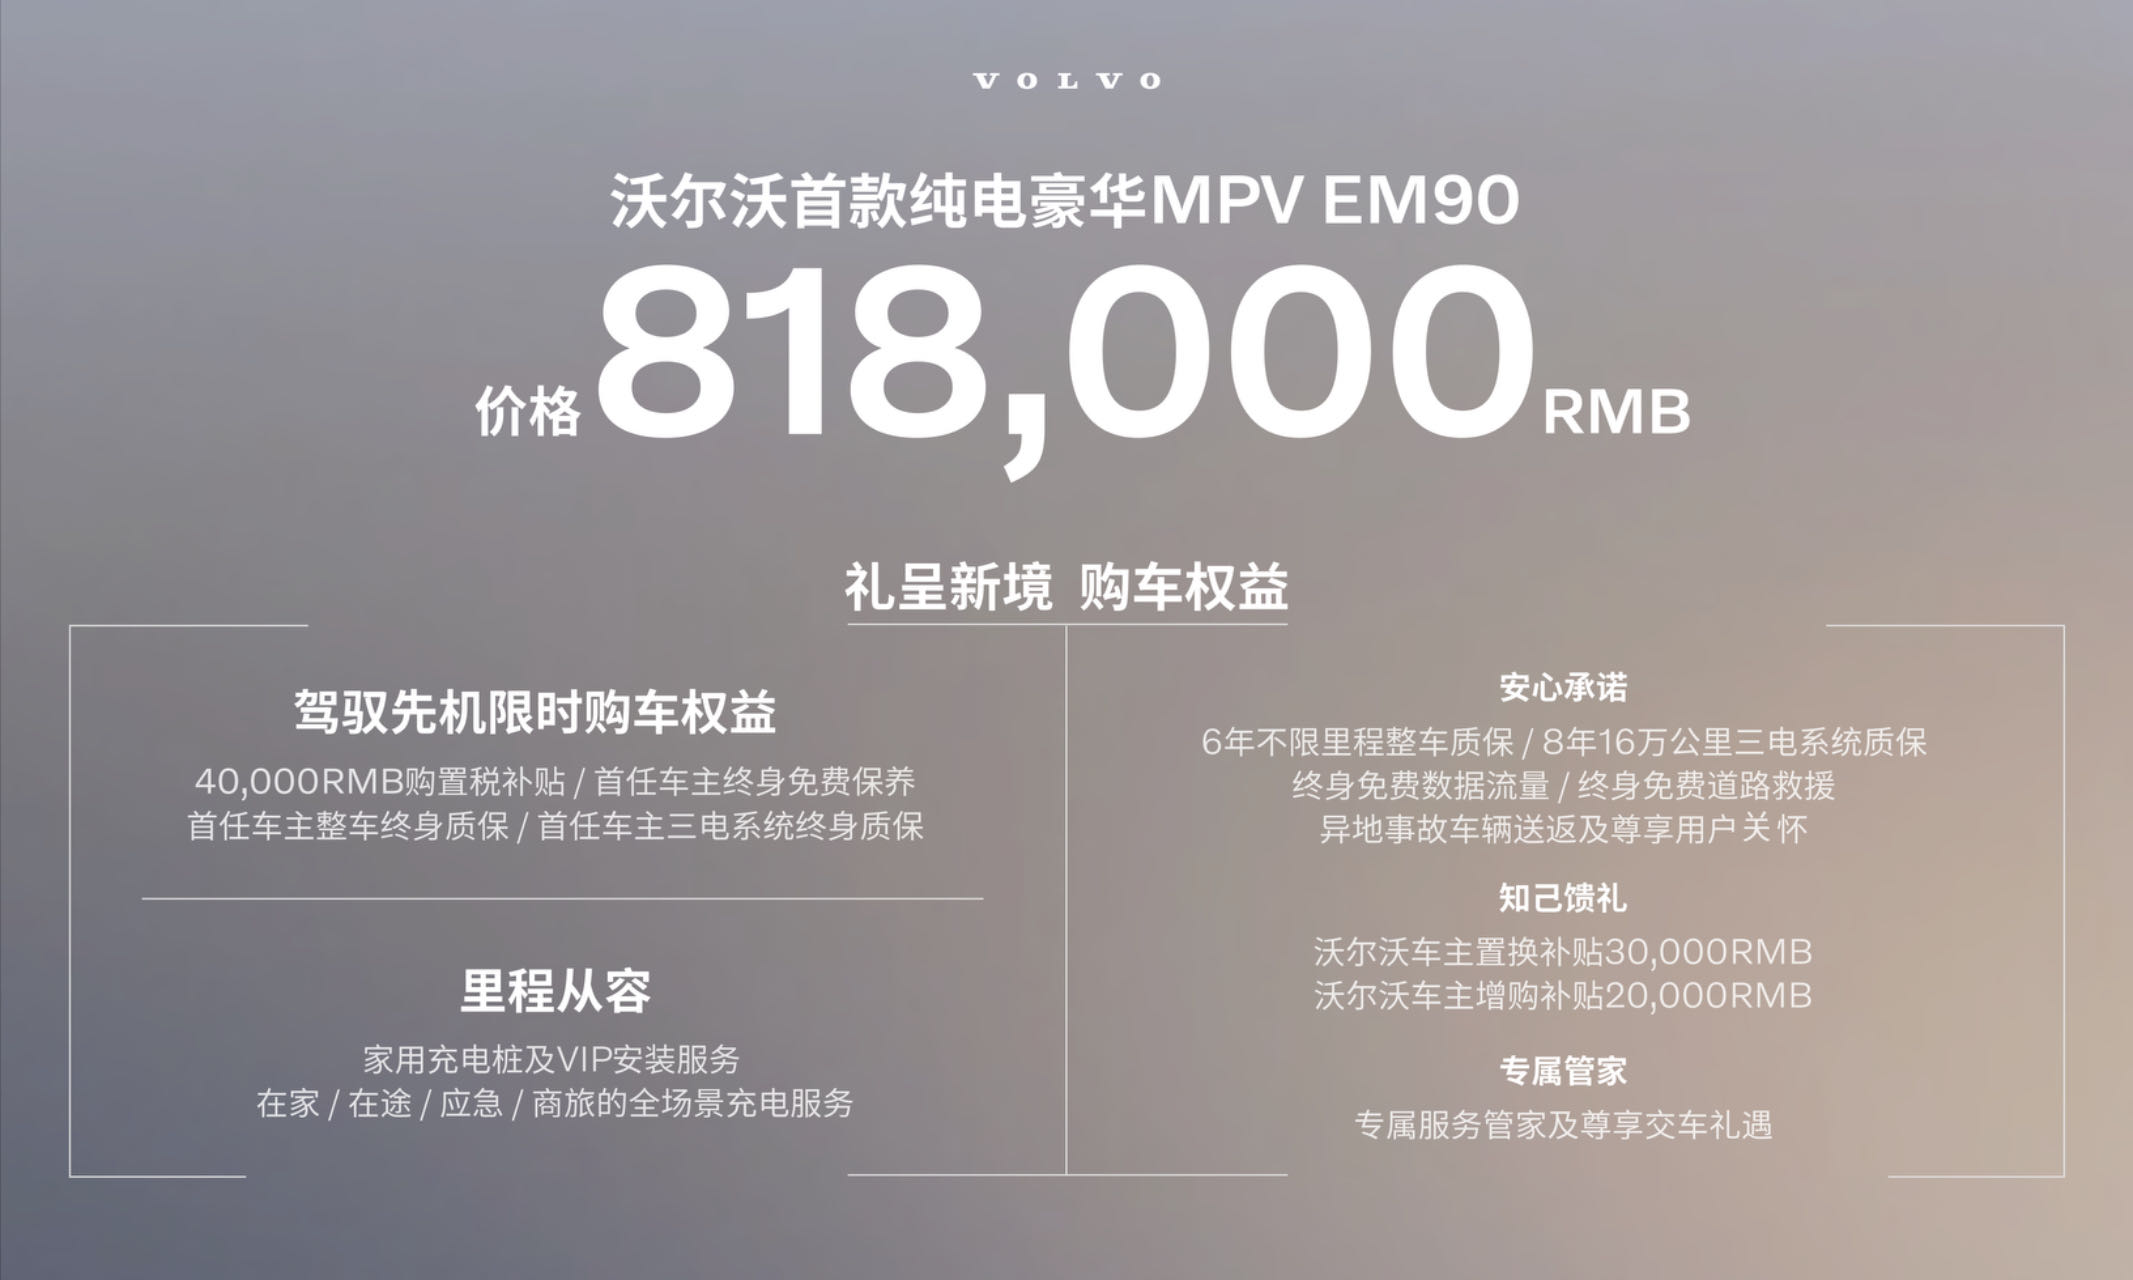 开启豪华MPV新时代 沃尔沃首款纯电豪华MPV EM90售价81.8万元